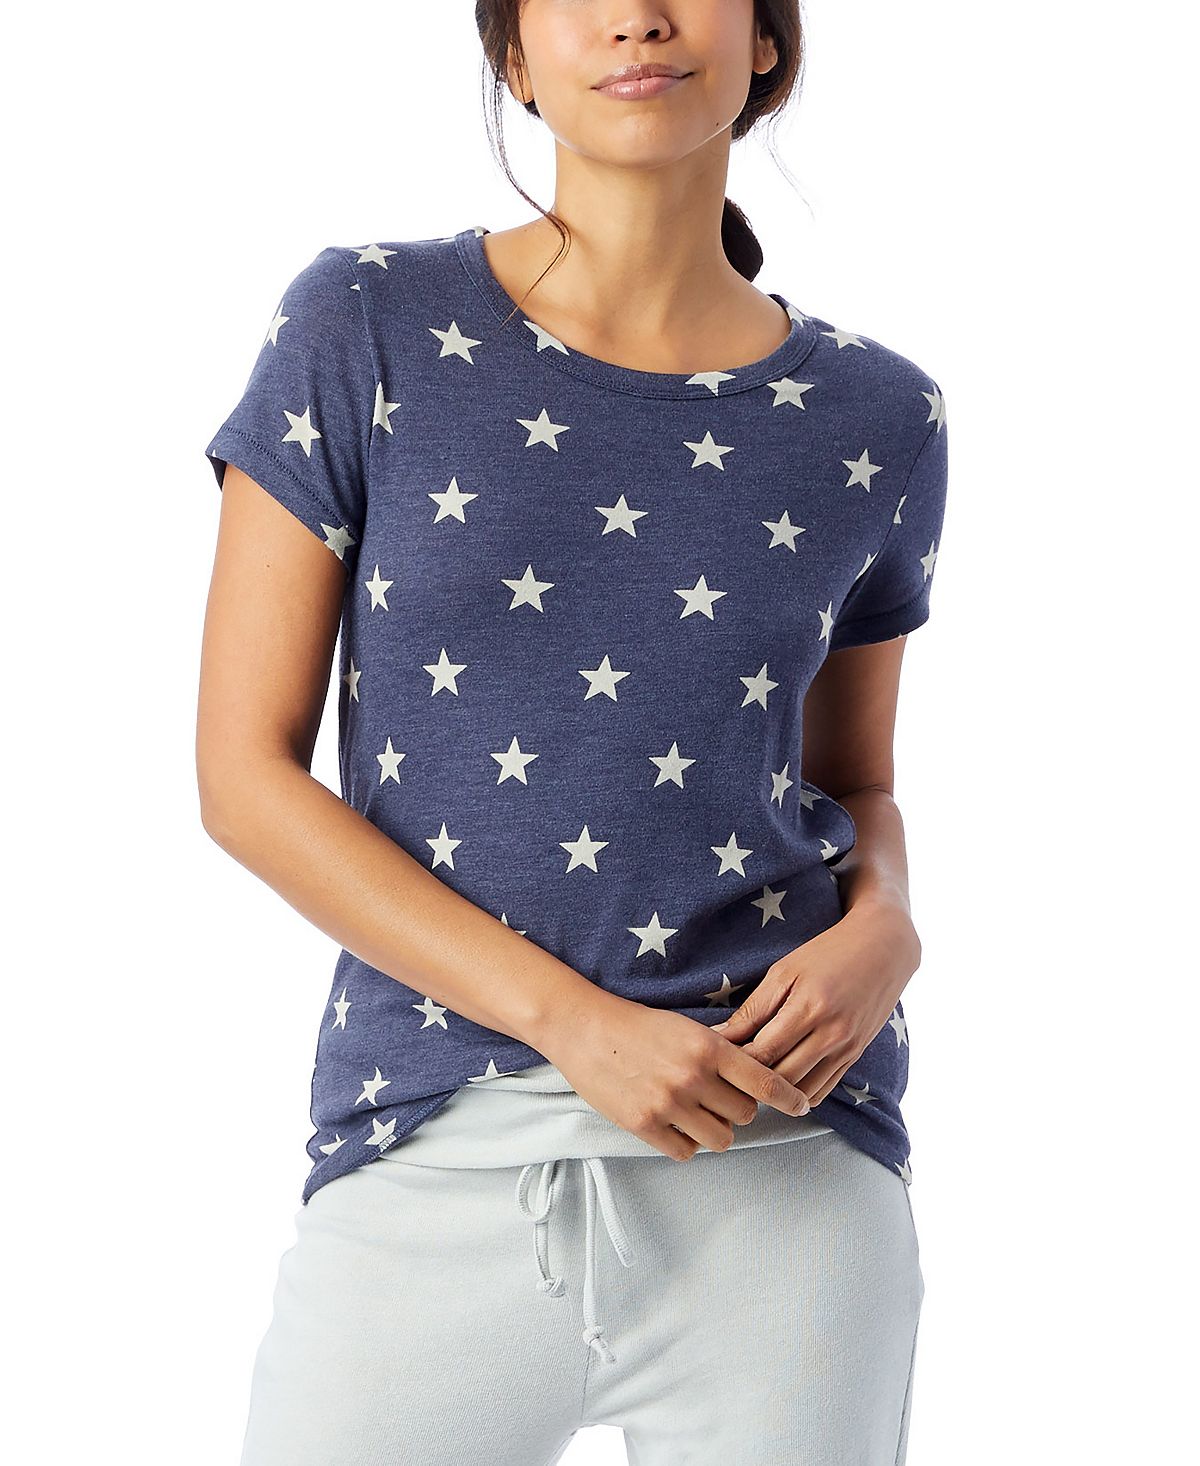 Женская футболка ideal с принтом из эко-джерси Macy's, мульти